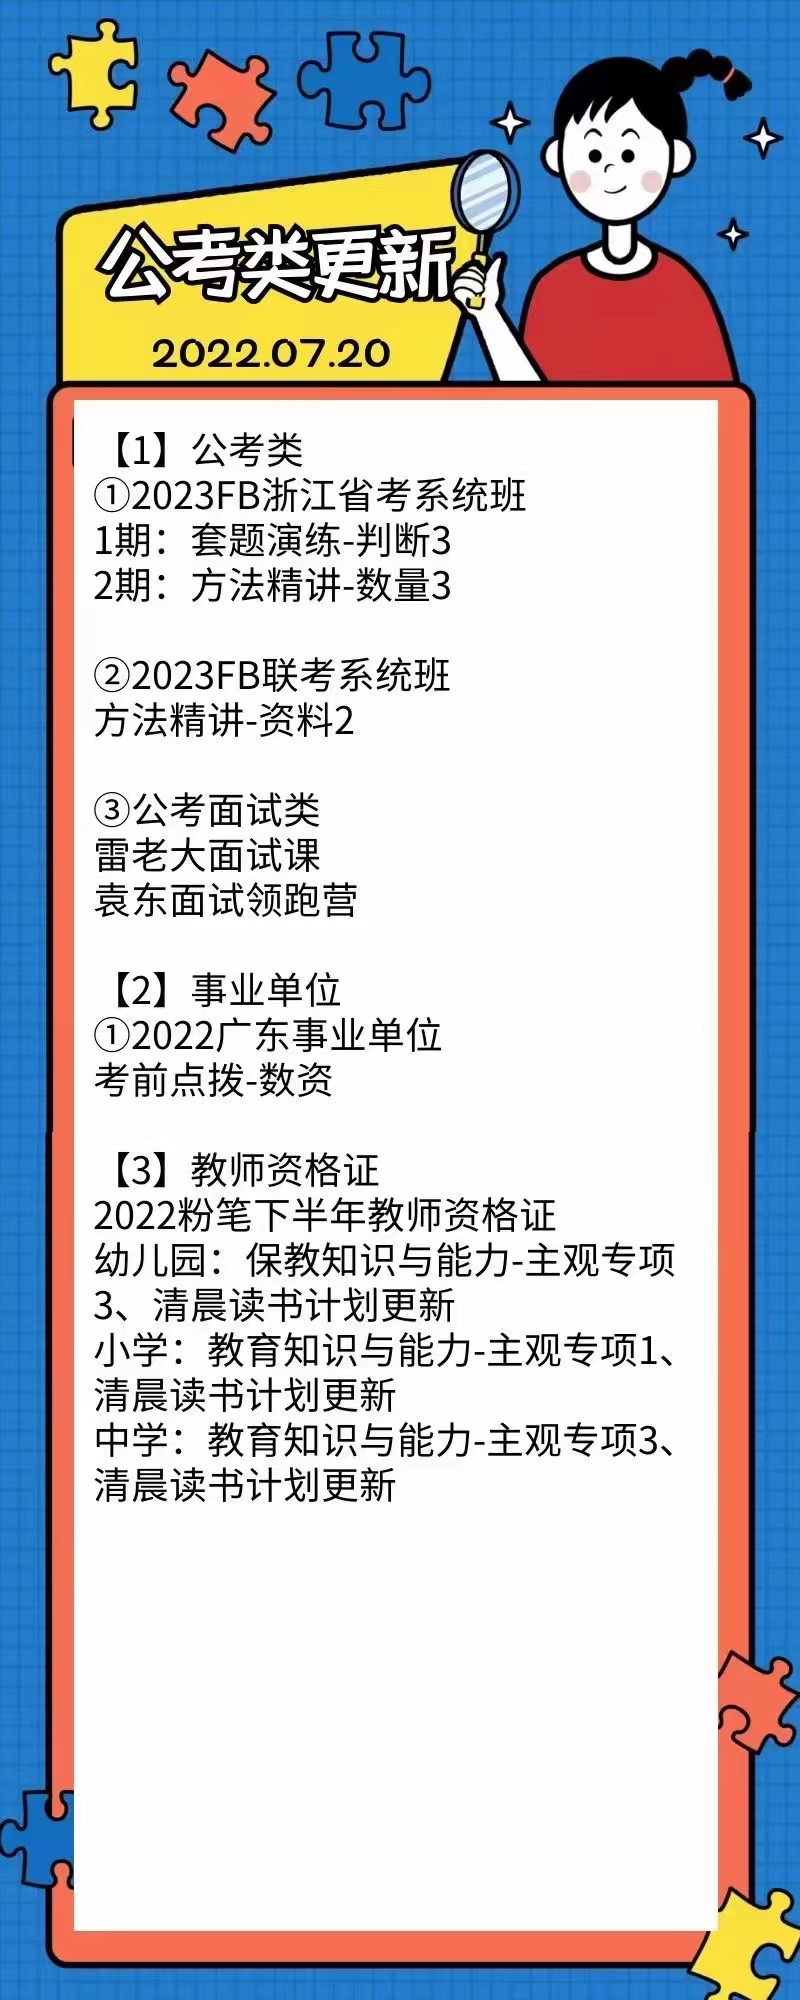 萌学院区07月20号更新 公务员 事业单位2022 教师招聘